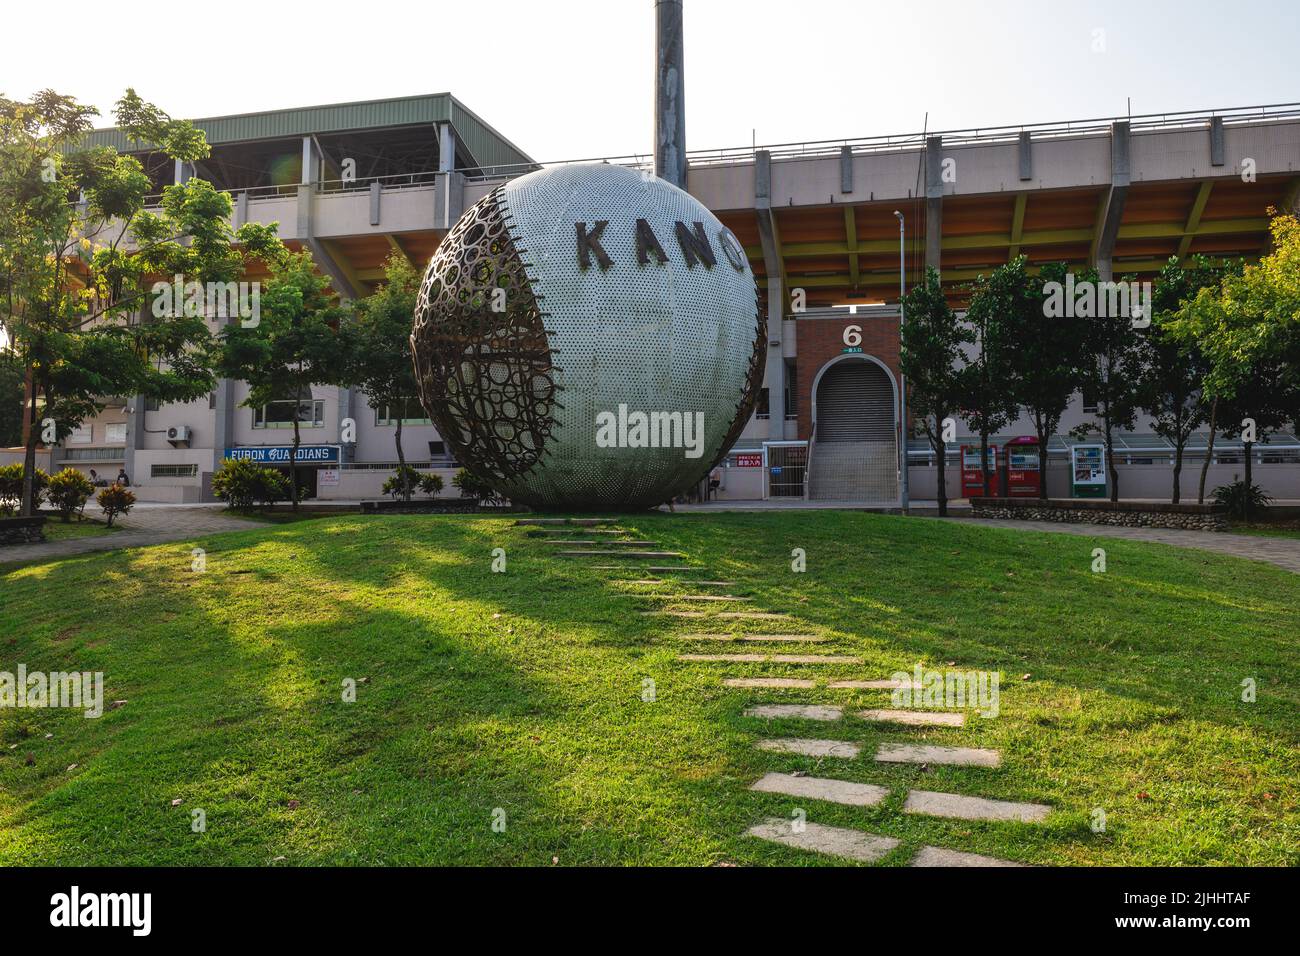 14 luglio 2022: Il parco Kano, terminato nell'agosto 2017, testimonia le orgogliose giornate di baseball di Chiayi City. La sfera è realizzata in lega di alluminio con Foto Stock